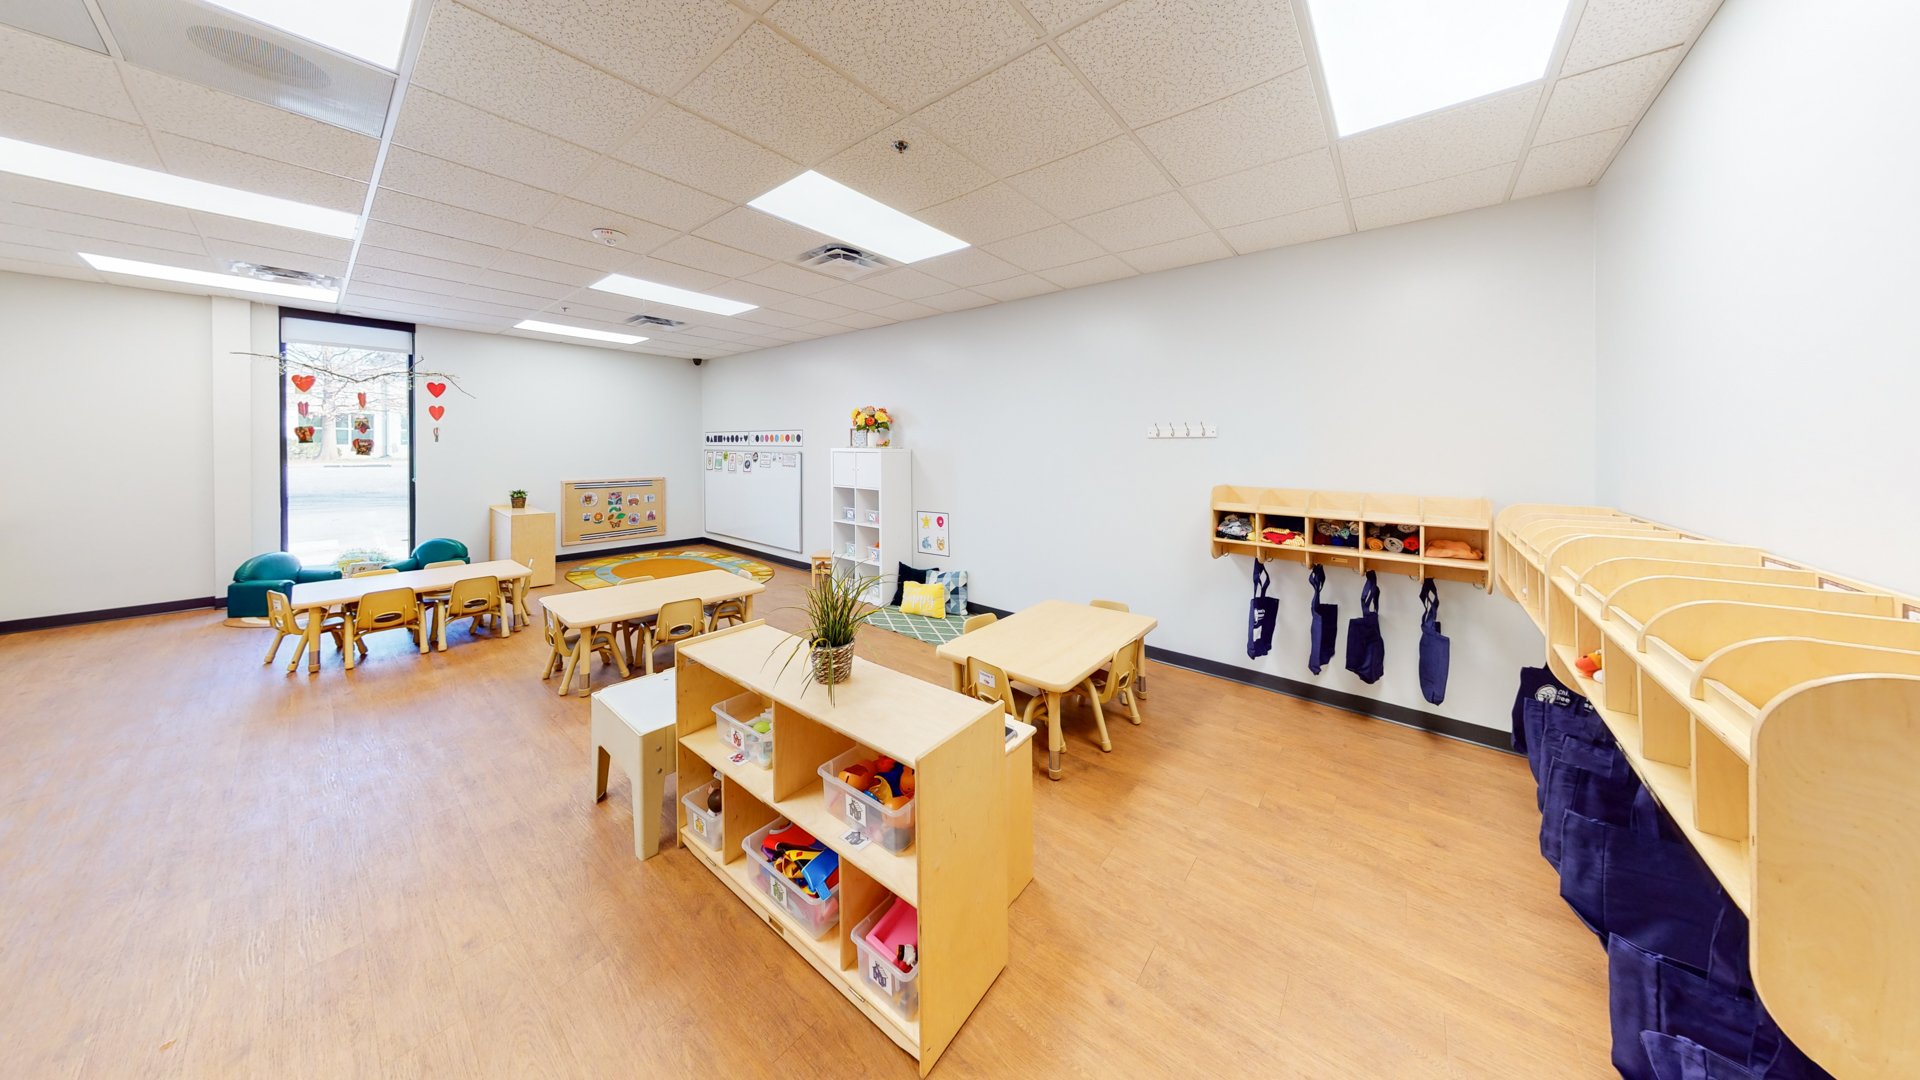 Childrens-Treehouse-Learning-Center-25.jpg